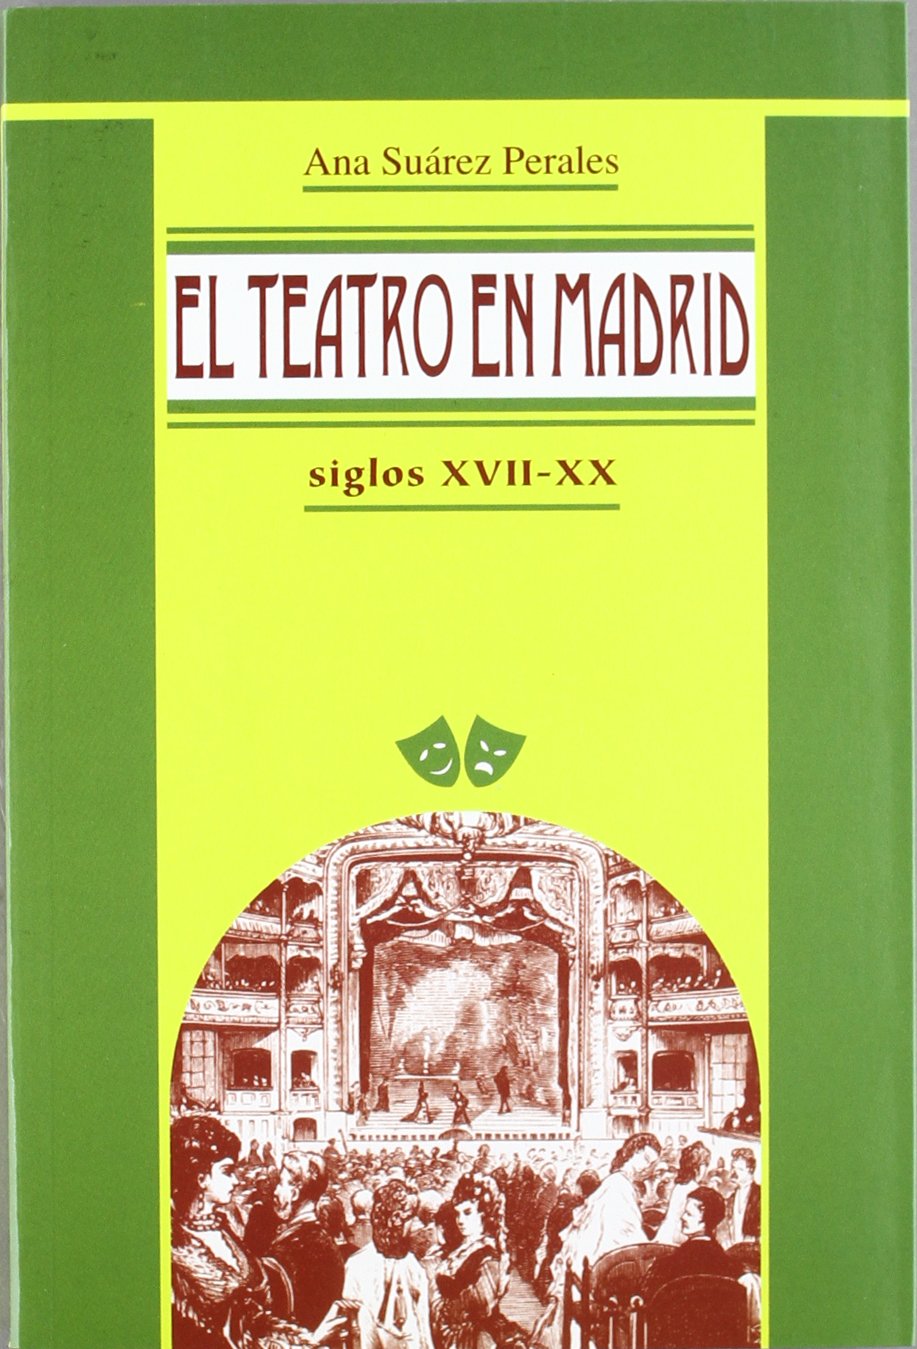 El teatro en Madrid